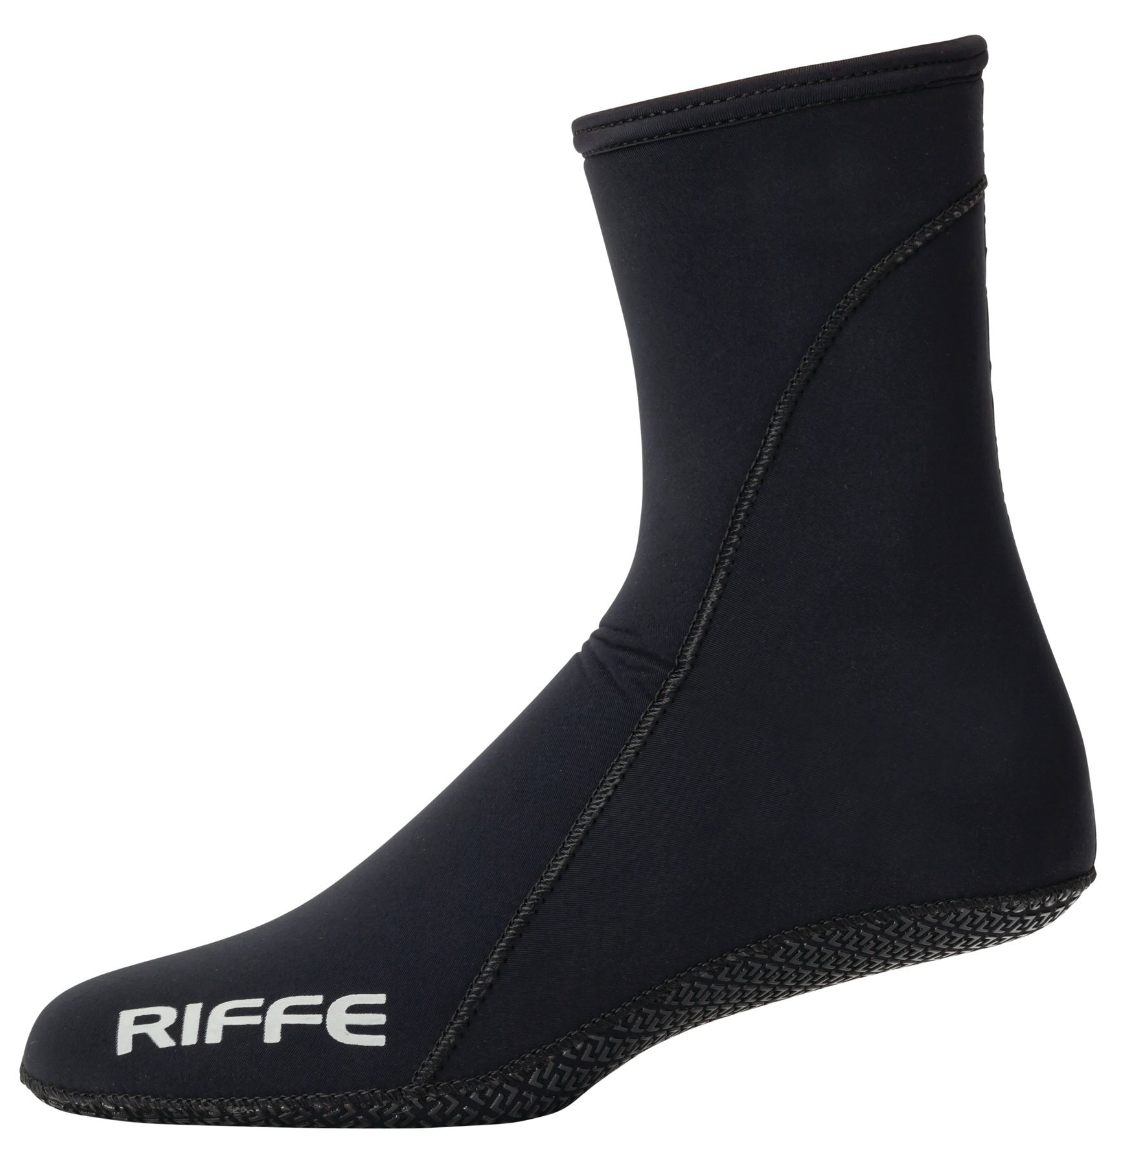 Riffe Fin Socks - 3.5mm